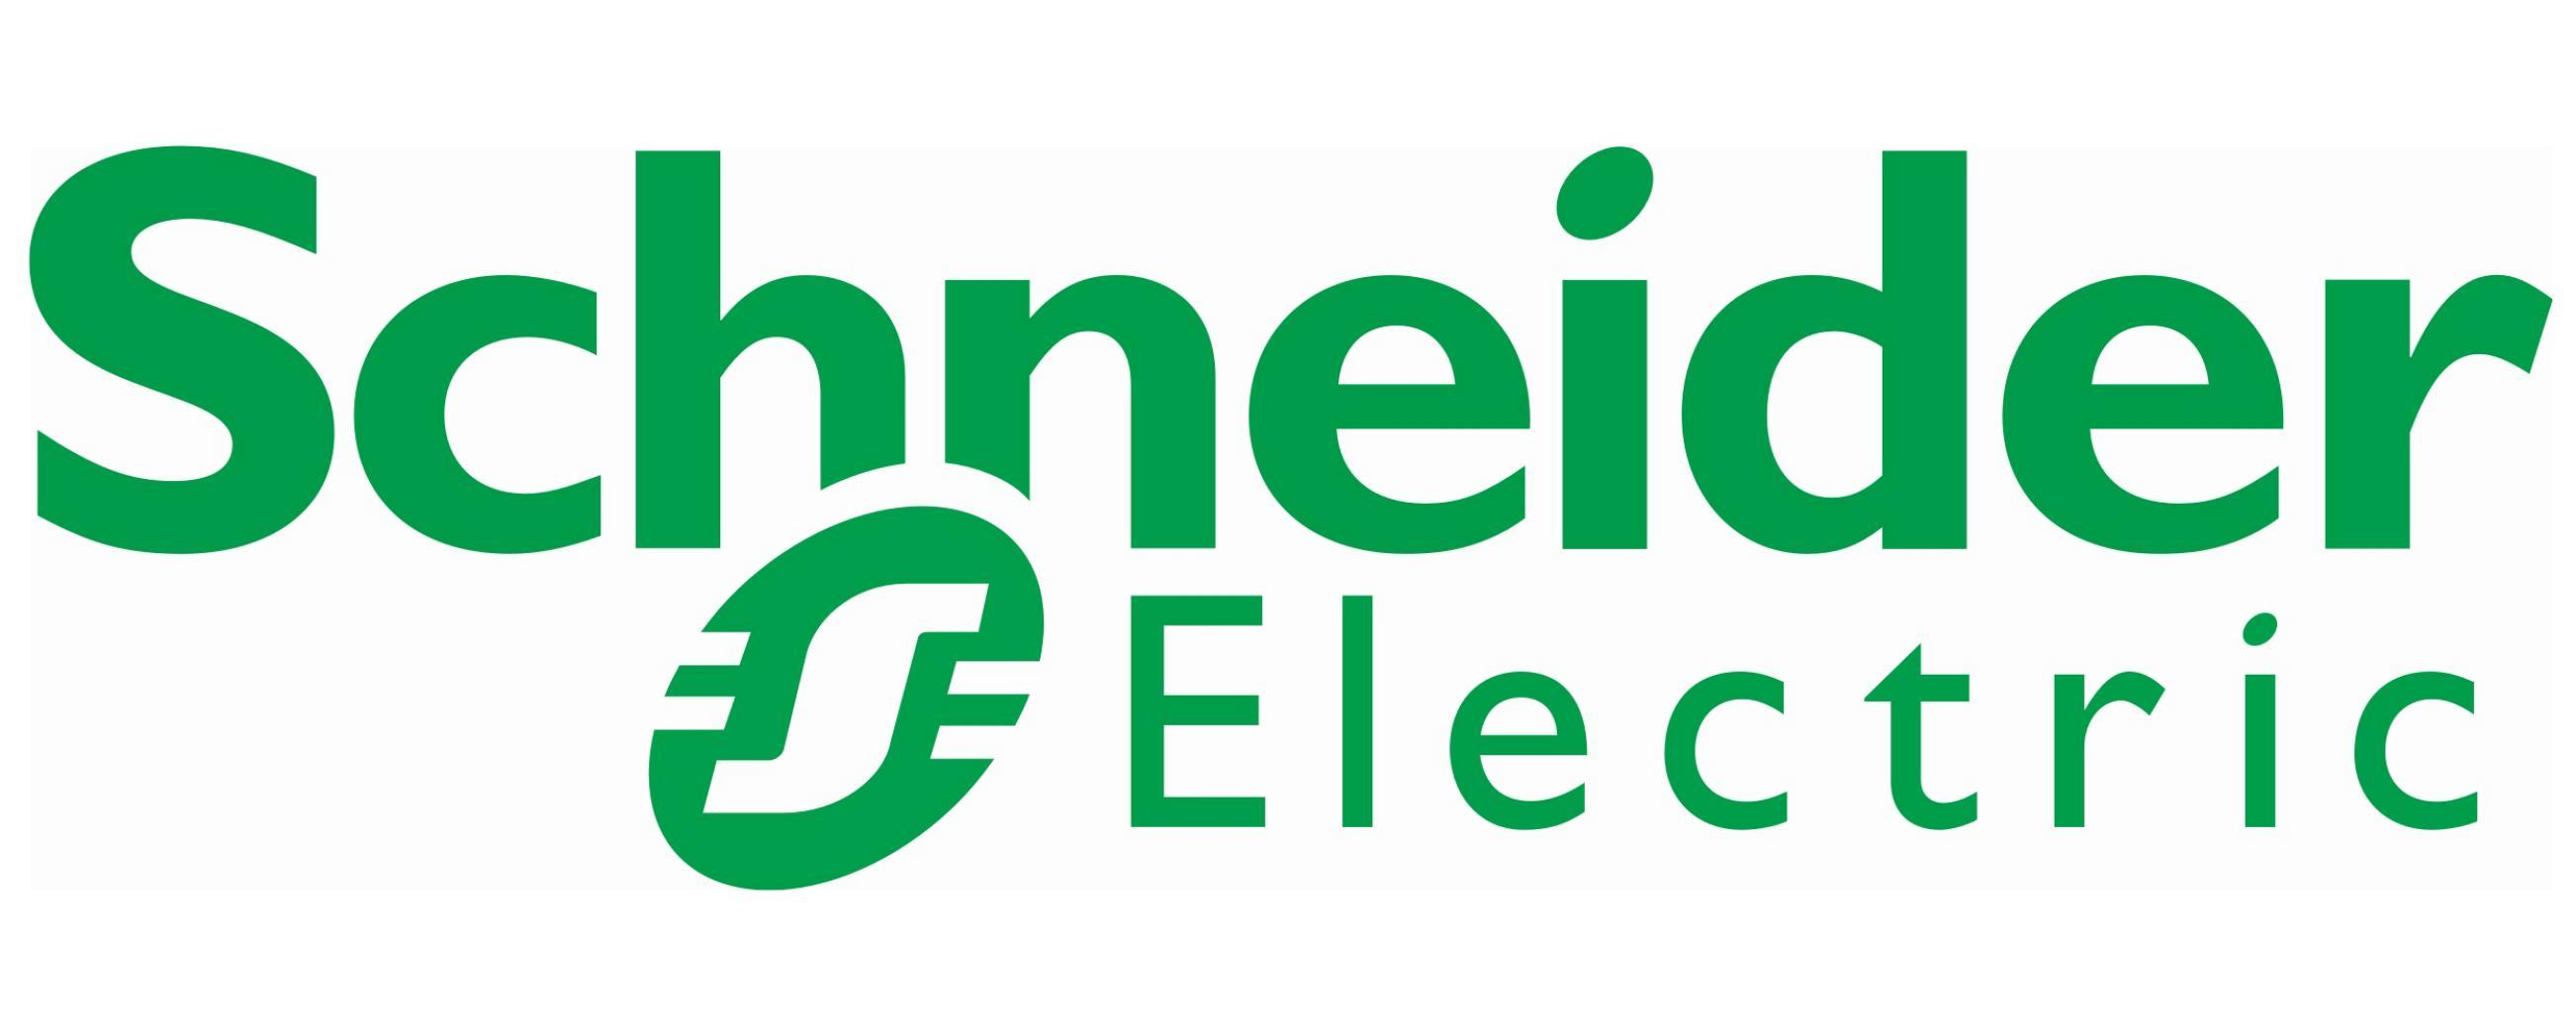 Entreprise Schneider Electric Chiffre d'affaires et résultats de l'action Schneider Electric